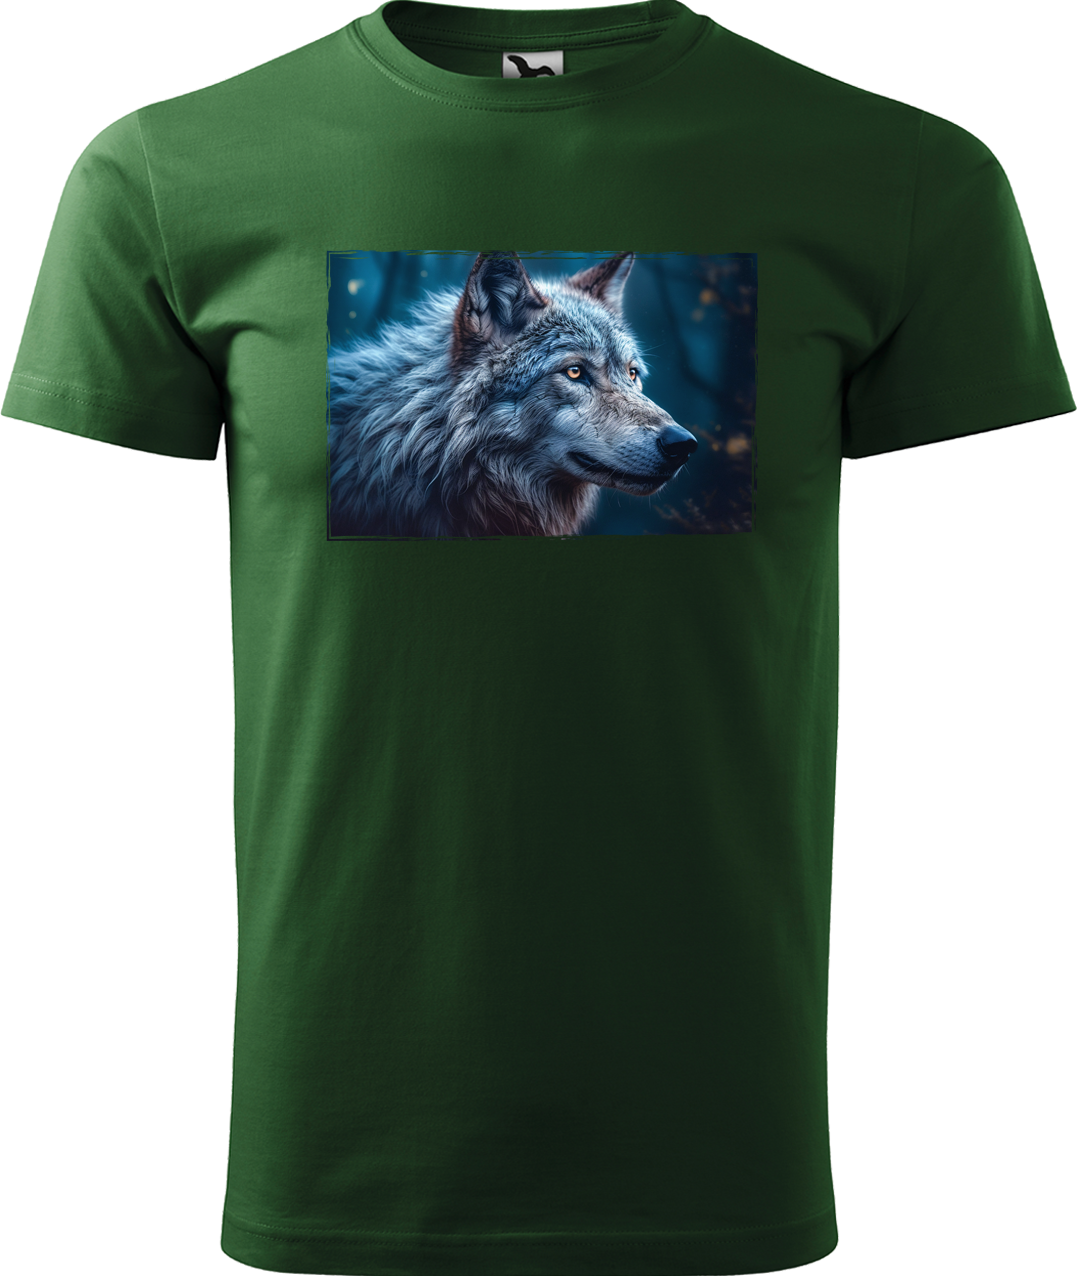 Pánské tričko s vlkem - Modrý vlk Velikost: M, Barva: Lahvově zelená (06)